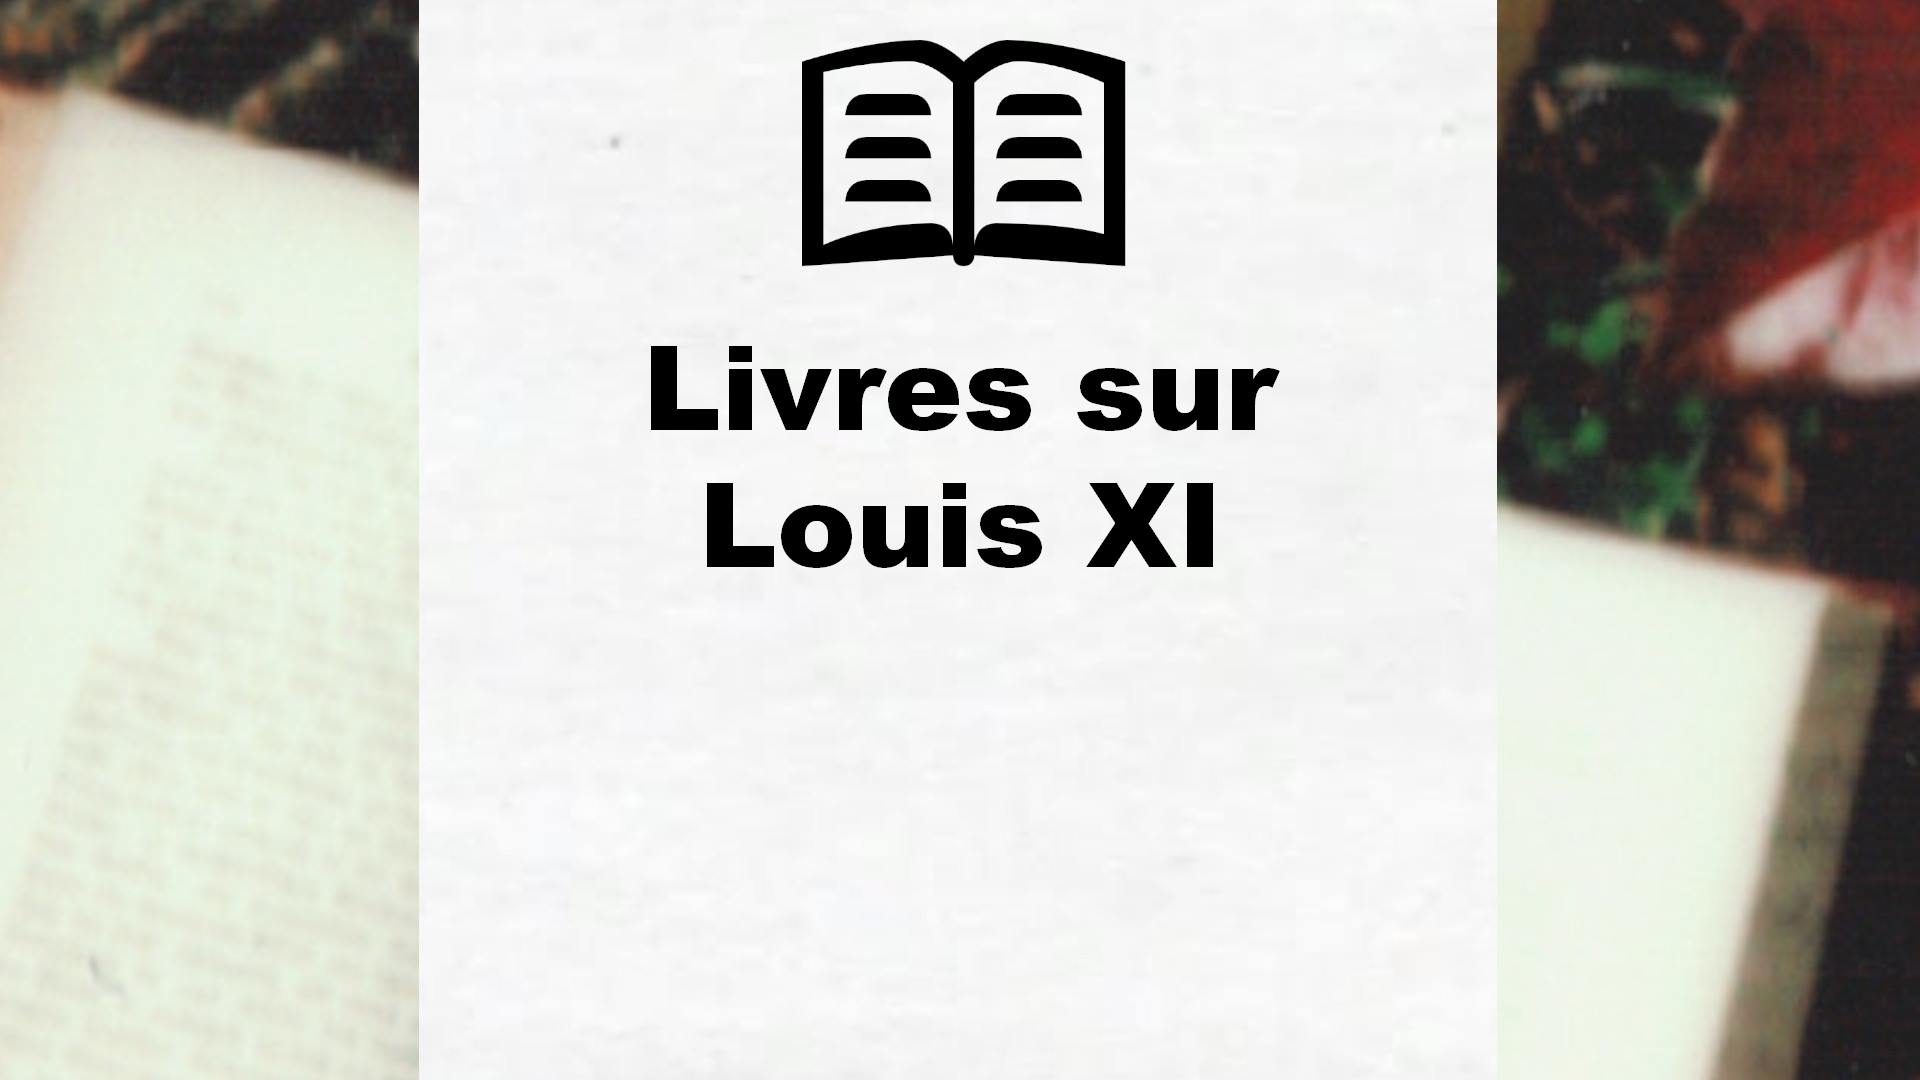 Livres sur Louis XI